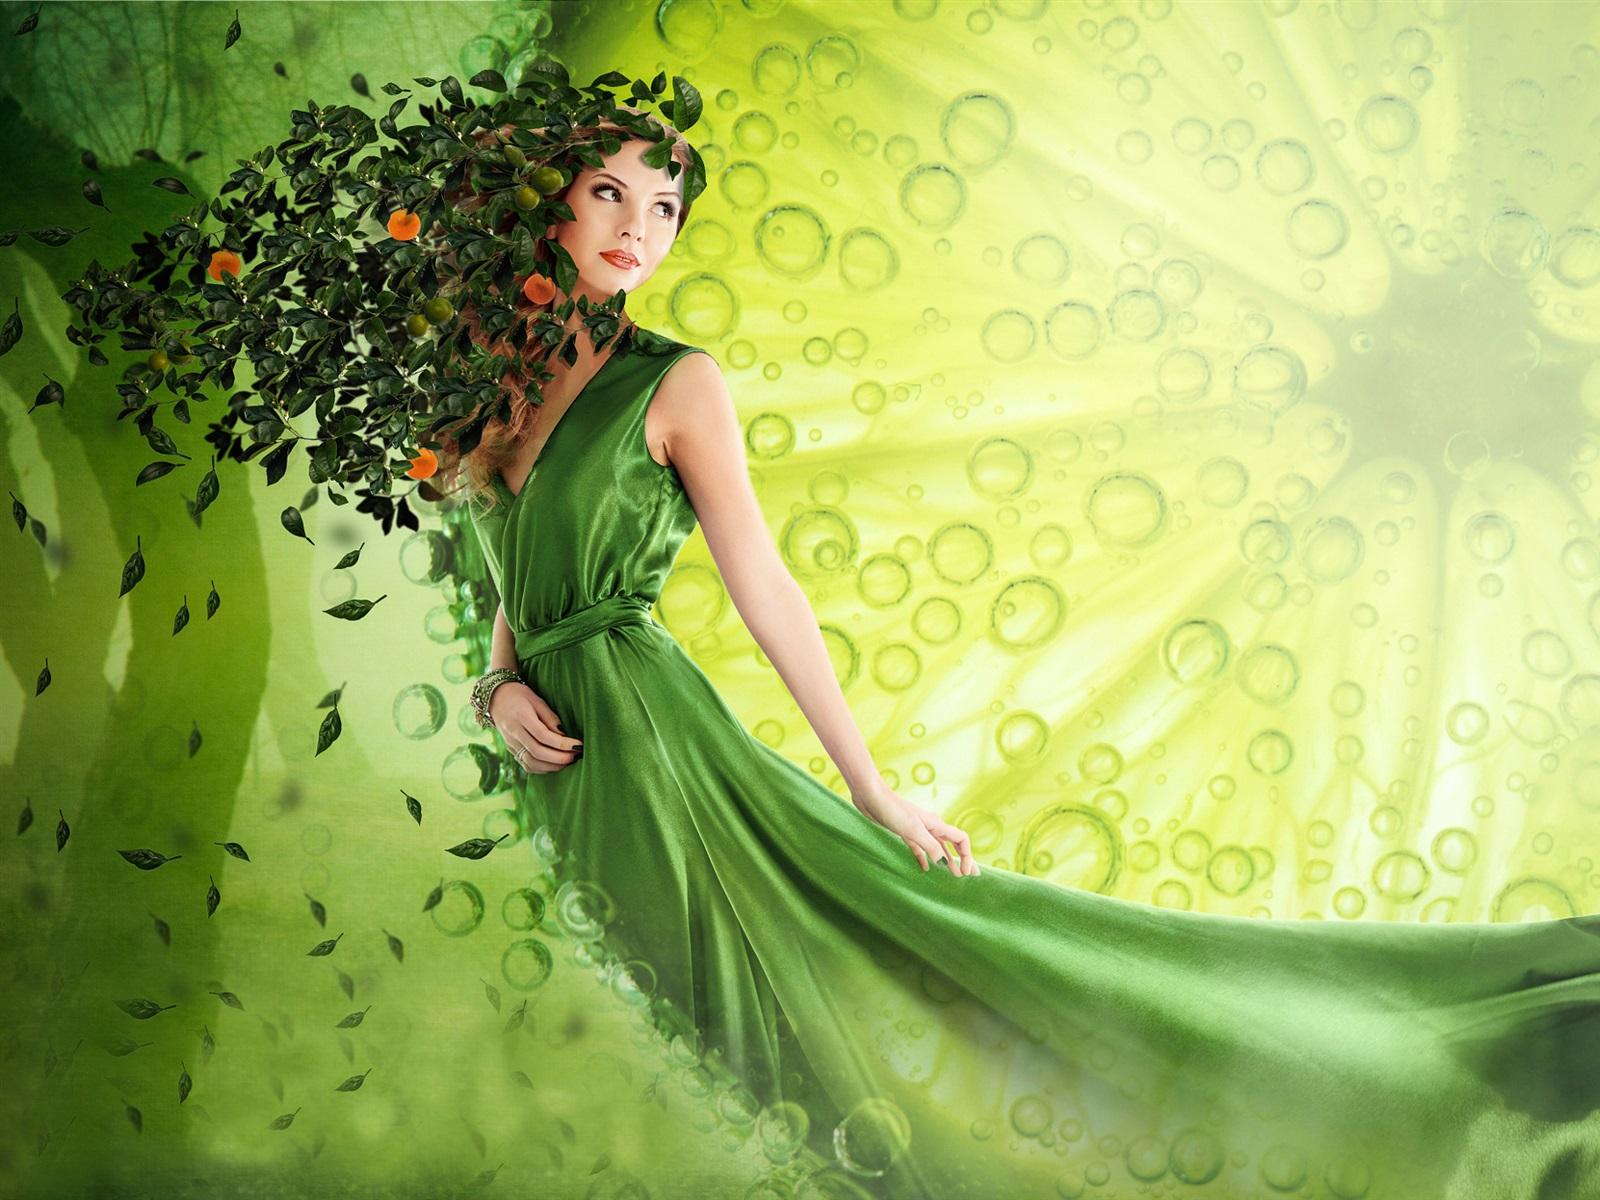 Wallpaper Green skirt fantasy girl, leaves, art picture